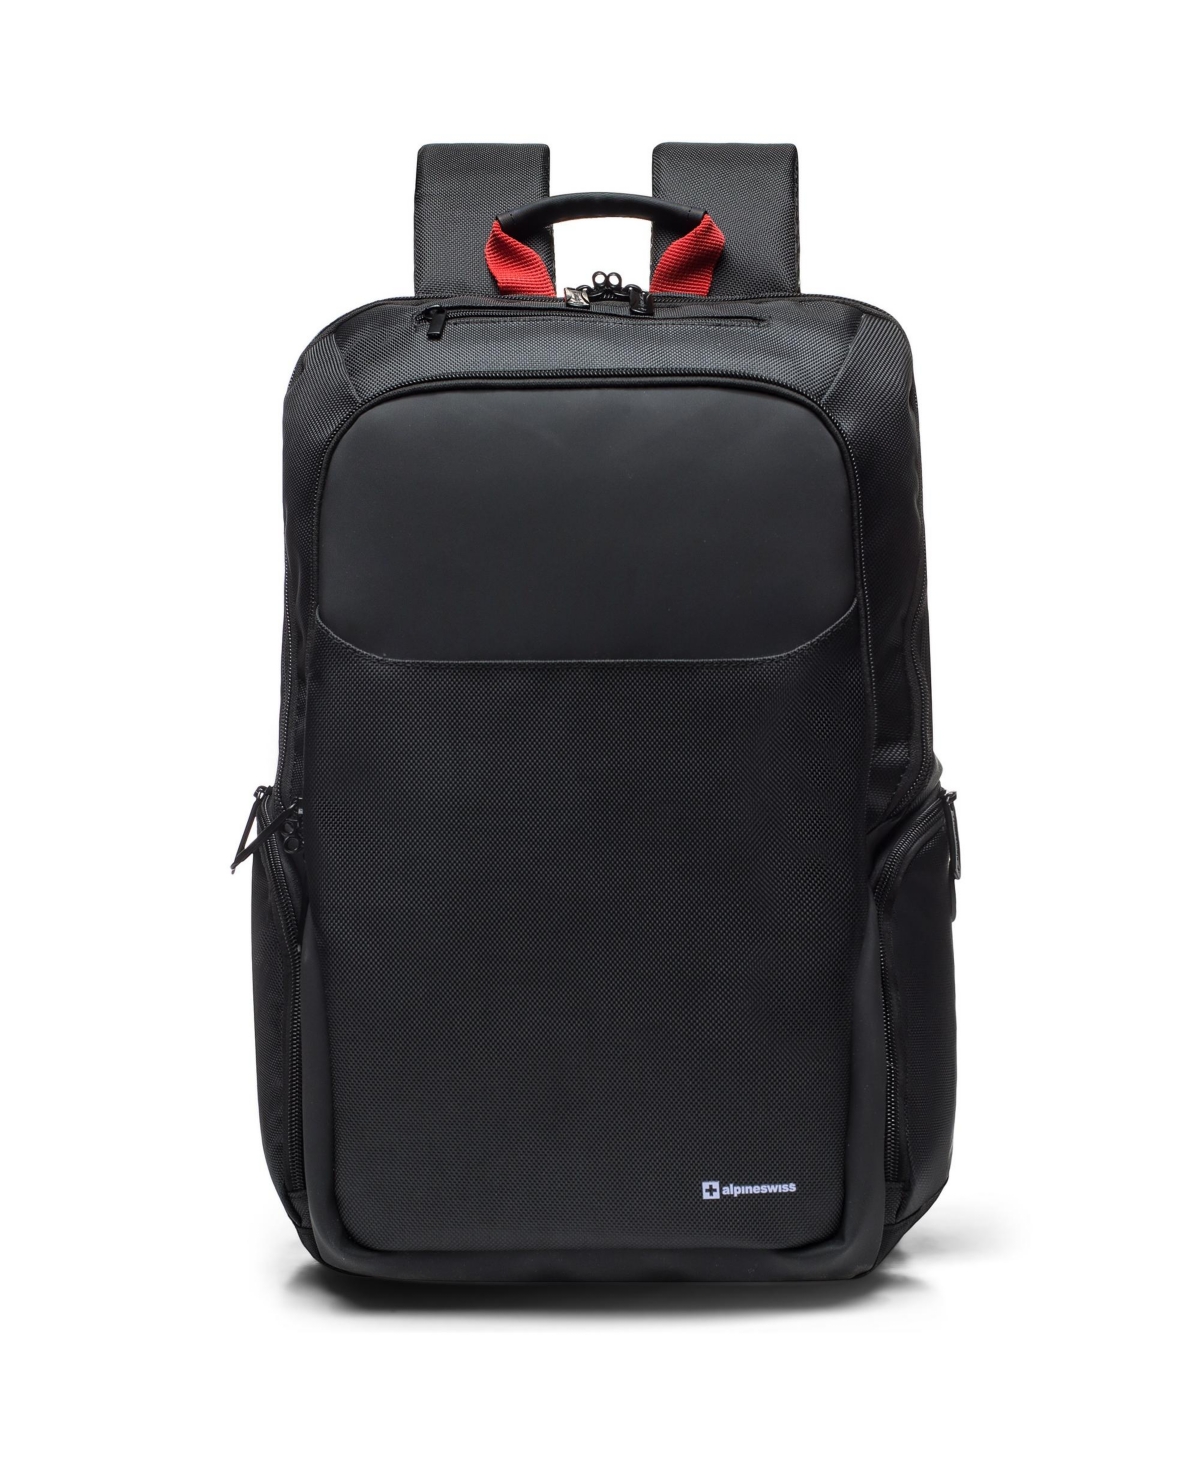 16a Laptop Backpack Slim Travel Computer Bag Business Daypack - Black